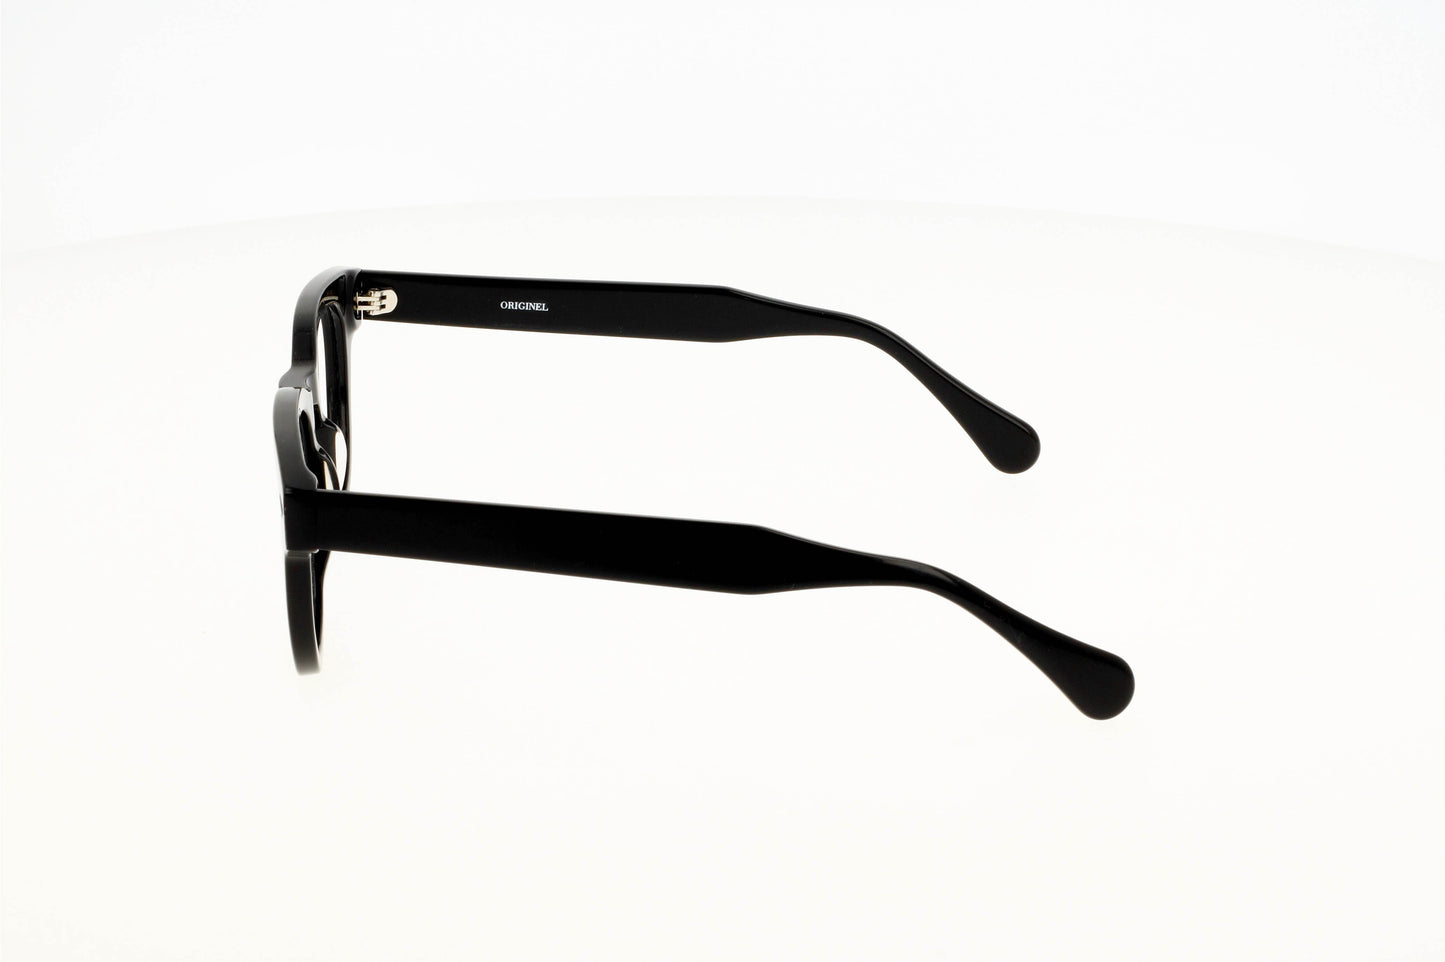 
                  
                    Originel eyewear France vous propose une lunette en acétate épais de couleur noire ou translucide verte. Elle est moderne, actuelle et tendance.
                  
                